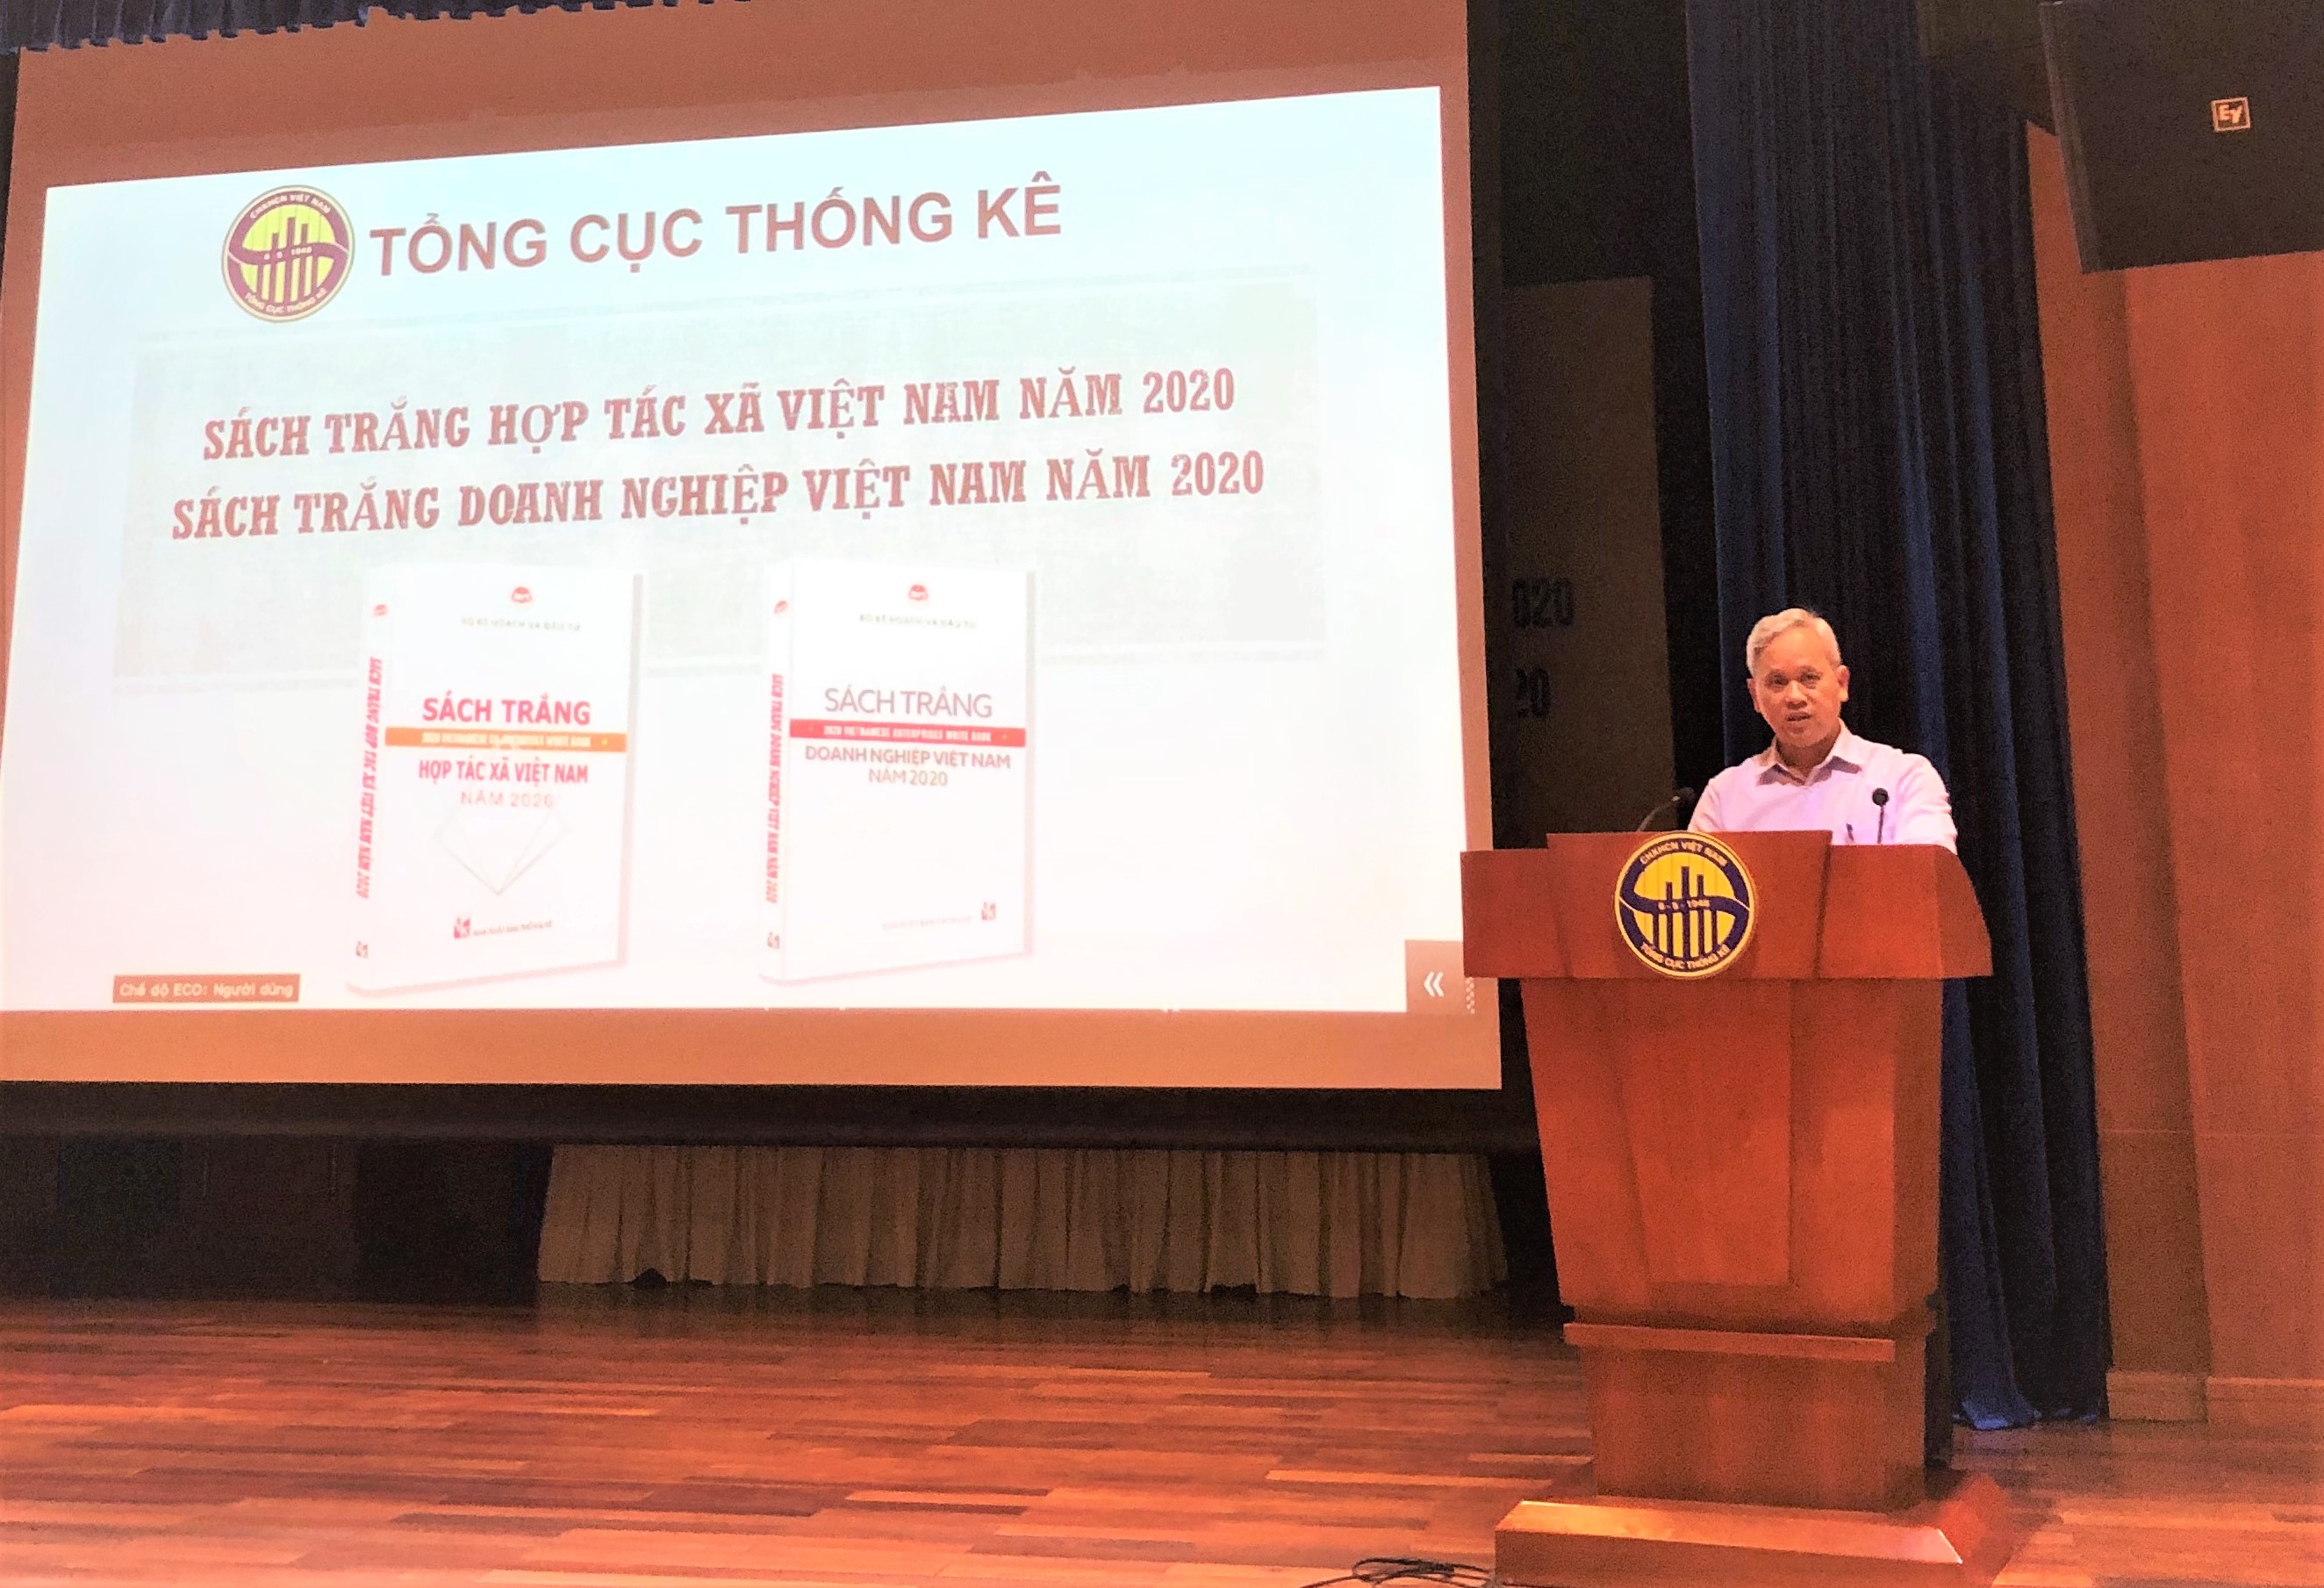 Ông Nguyễn Bích Lâm, Tổng Cục trưởng TCTK giới thiệu về hai cuốn sách trắng tại buổi họp báo